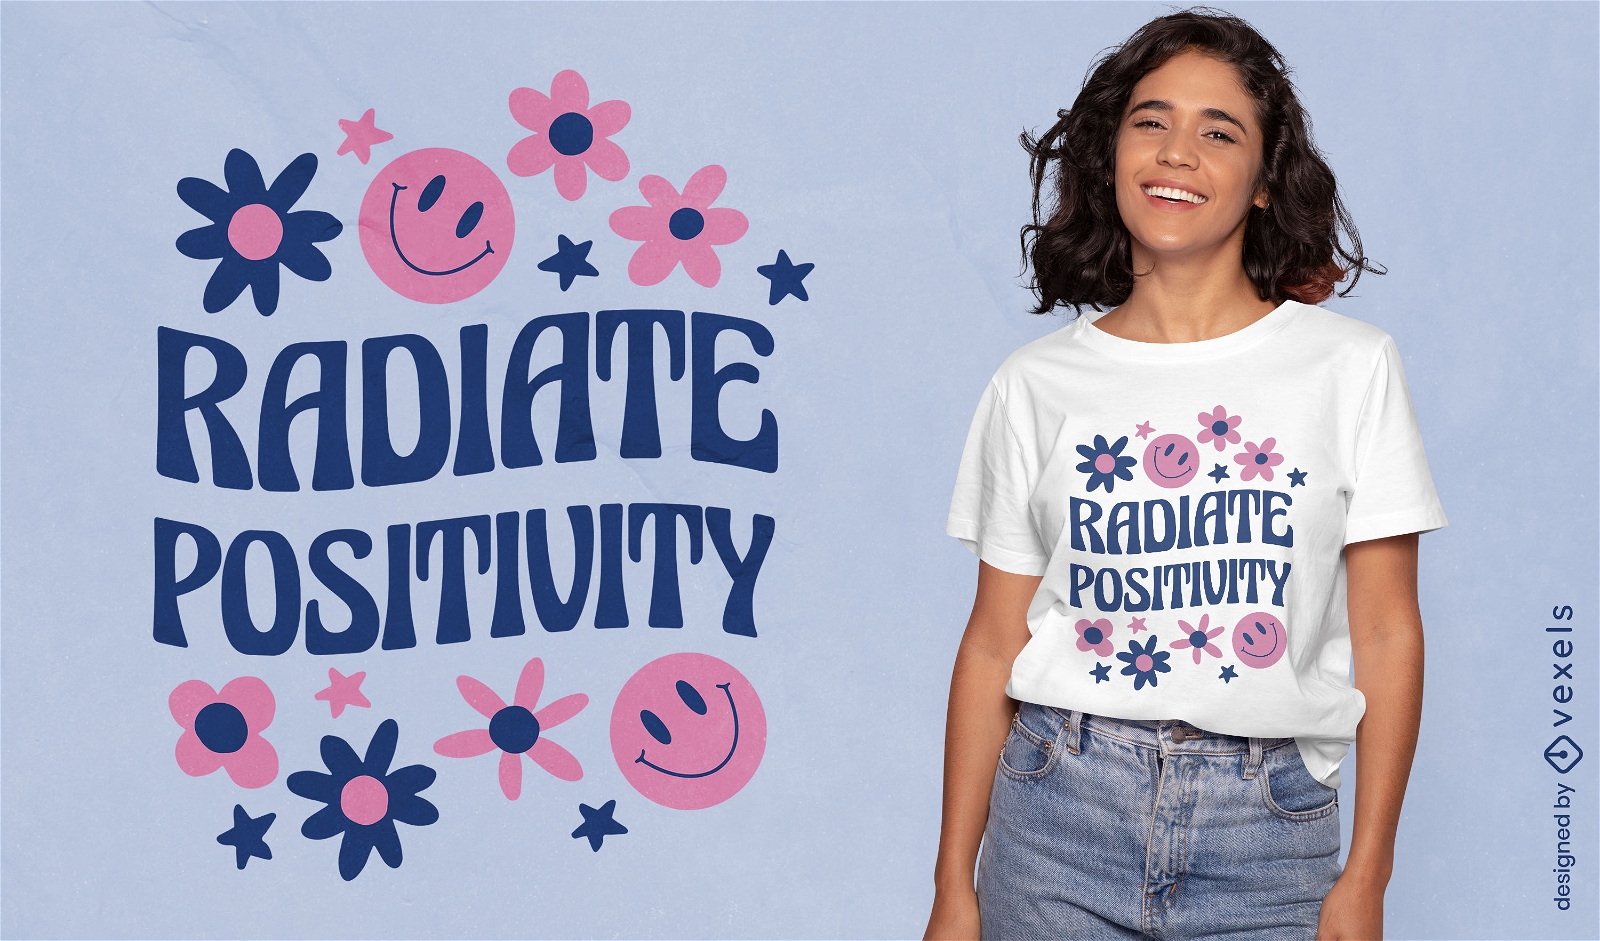 Irradie design de camiseta motivacional de positividade